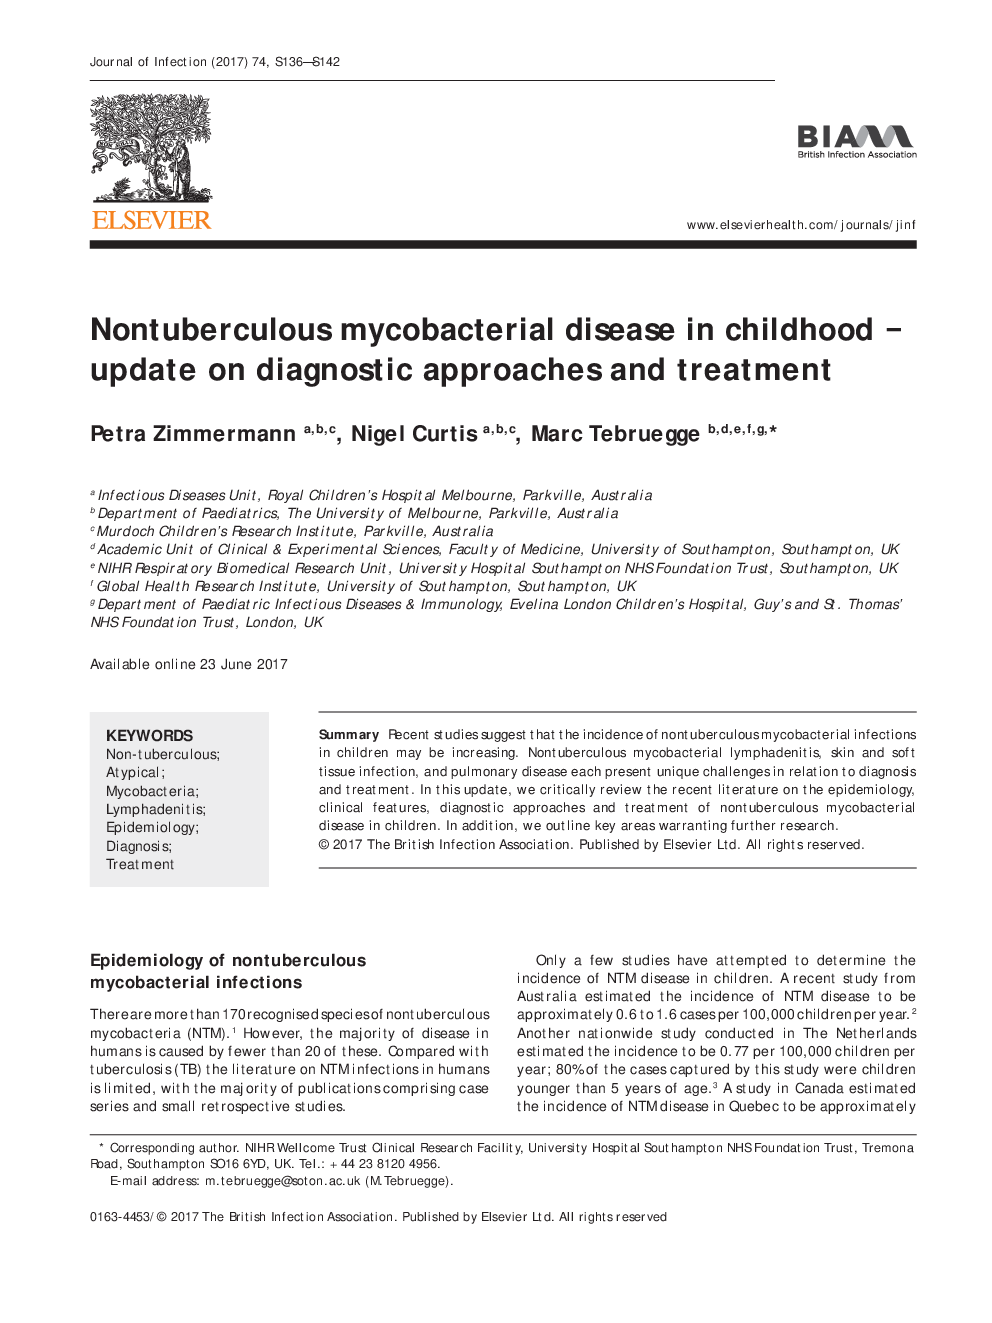 بیماری های میکوباکتریومی غیرطبیعی در دوران کودکی - به روز رسانی در مورد روش های تشخیصی و درمان 